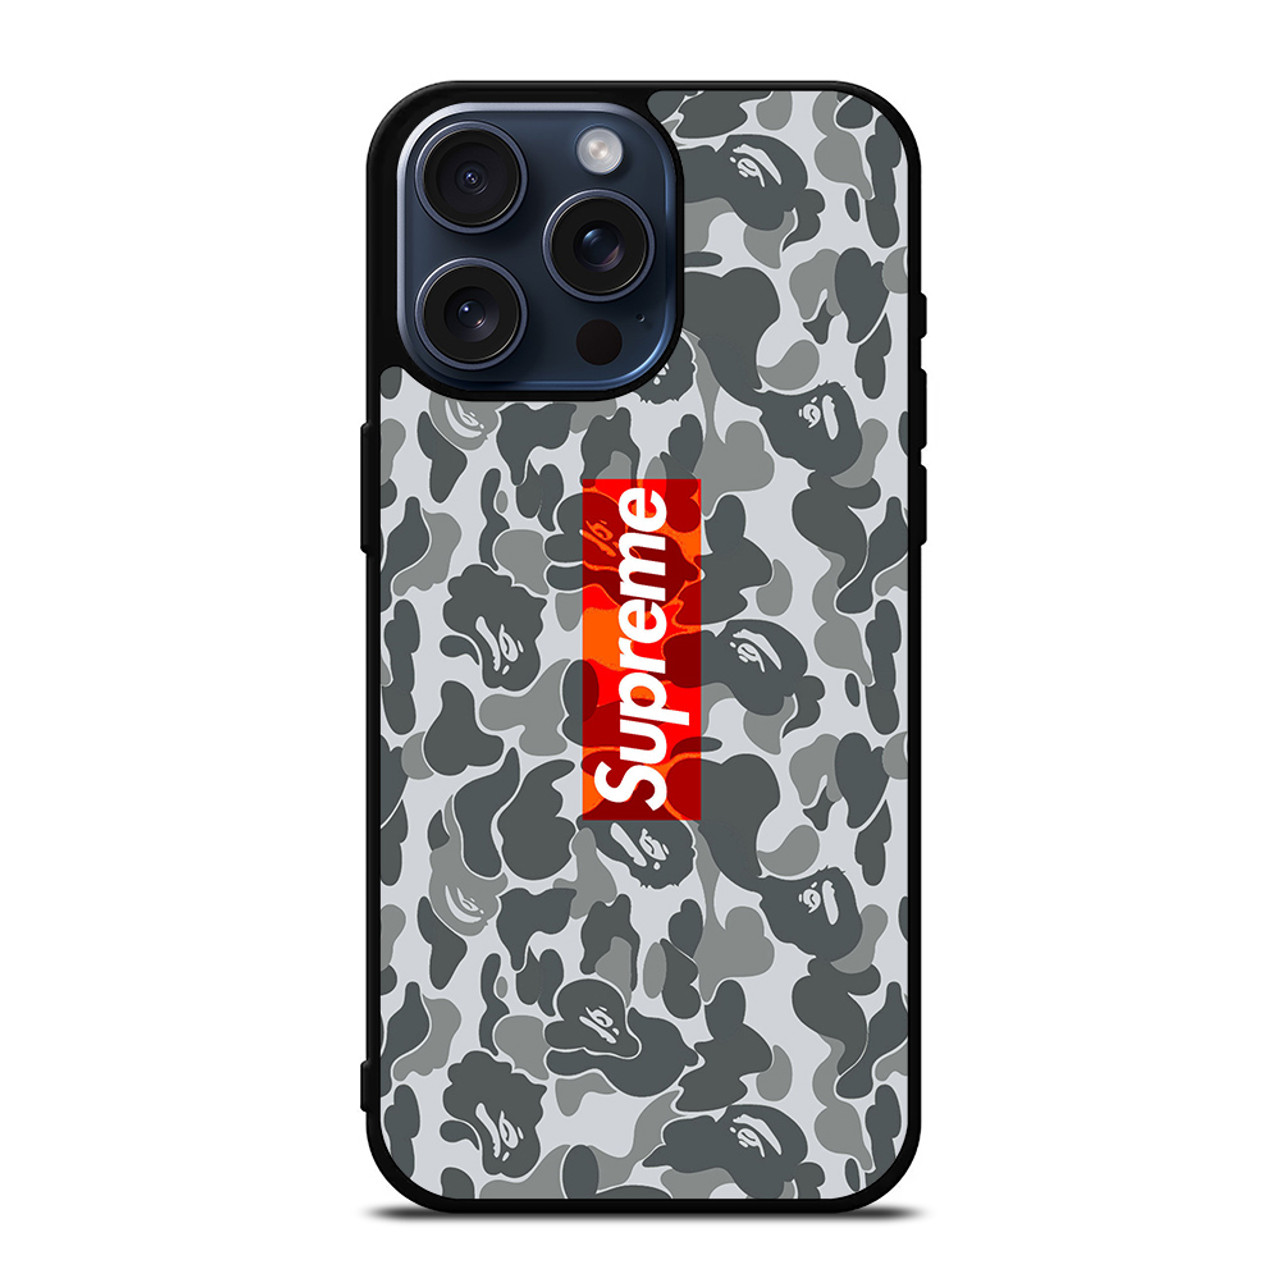 Supreme Camo iPhone 11 Pro Max Case